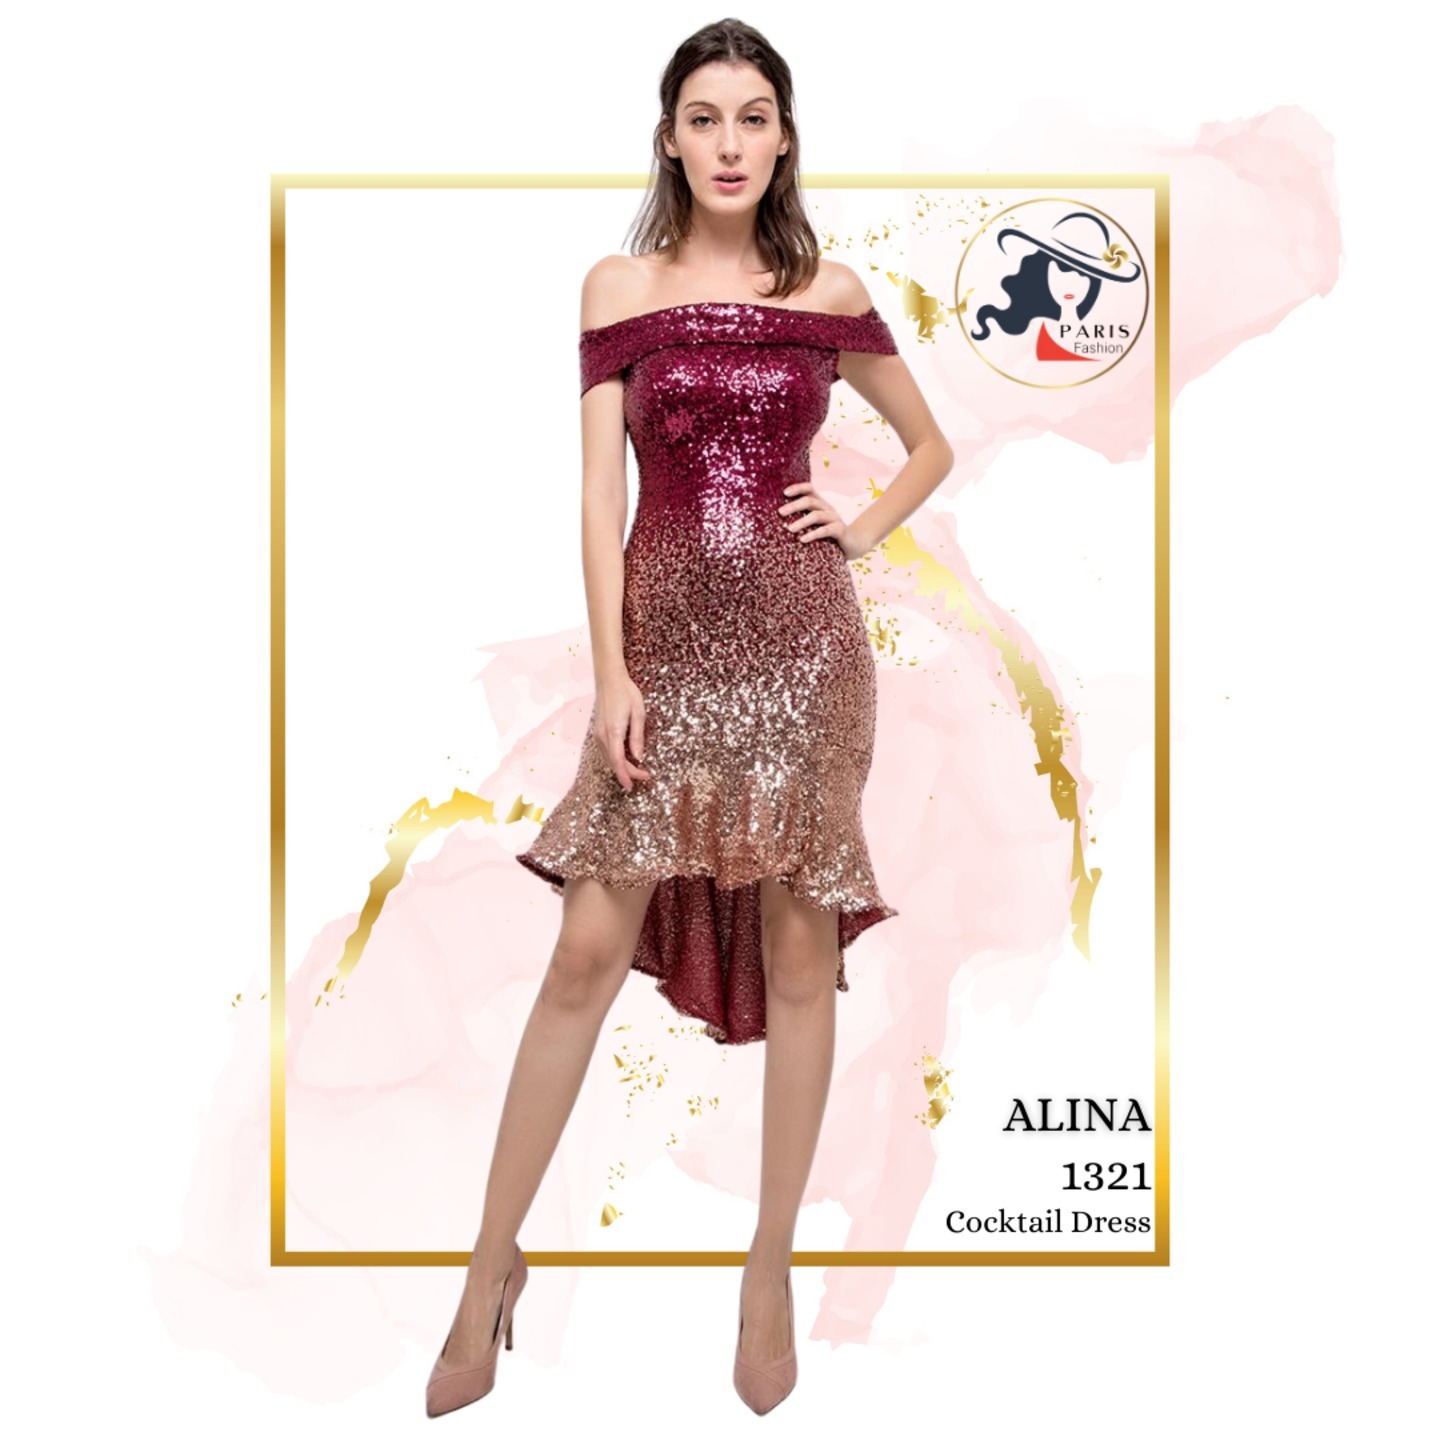 ALINA 1321 OFF SHOULDER COCKTAIL DRESS